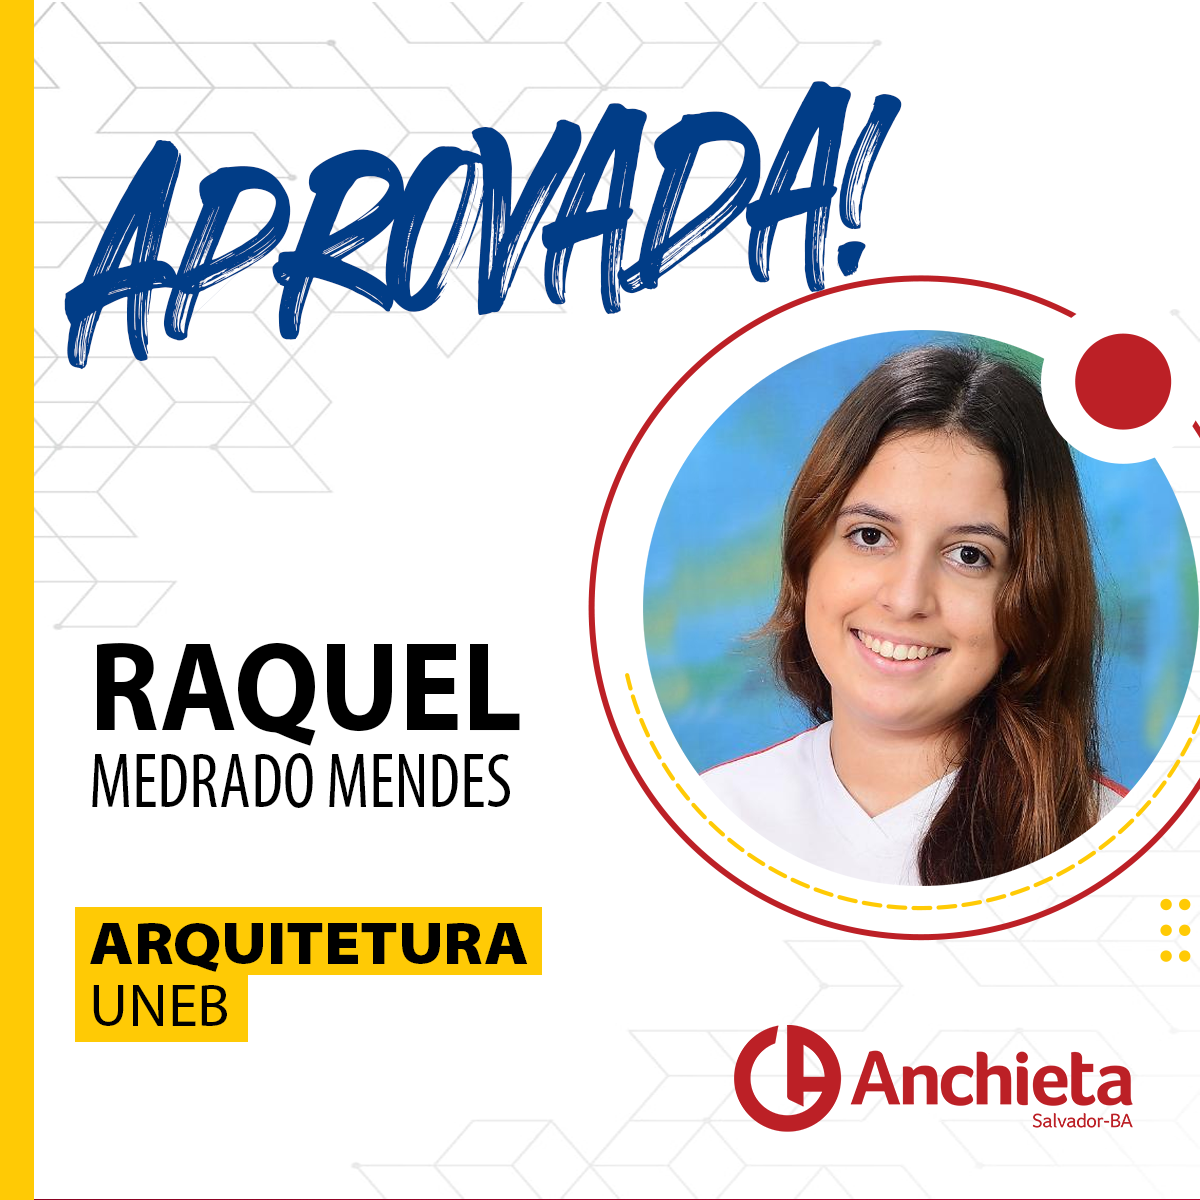 Raquel Medrado MendesArquiteturaUNIFACS